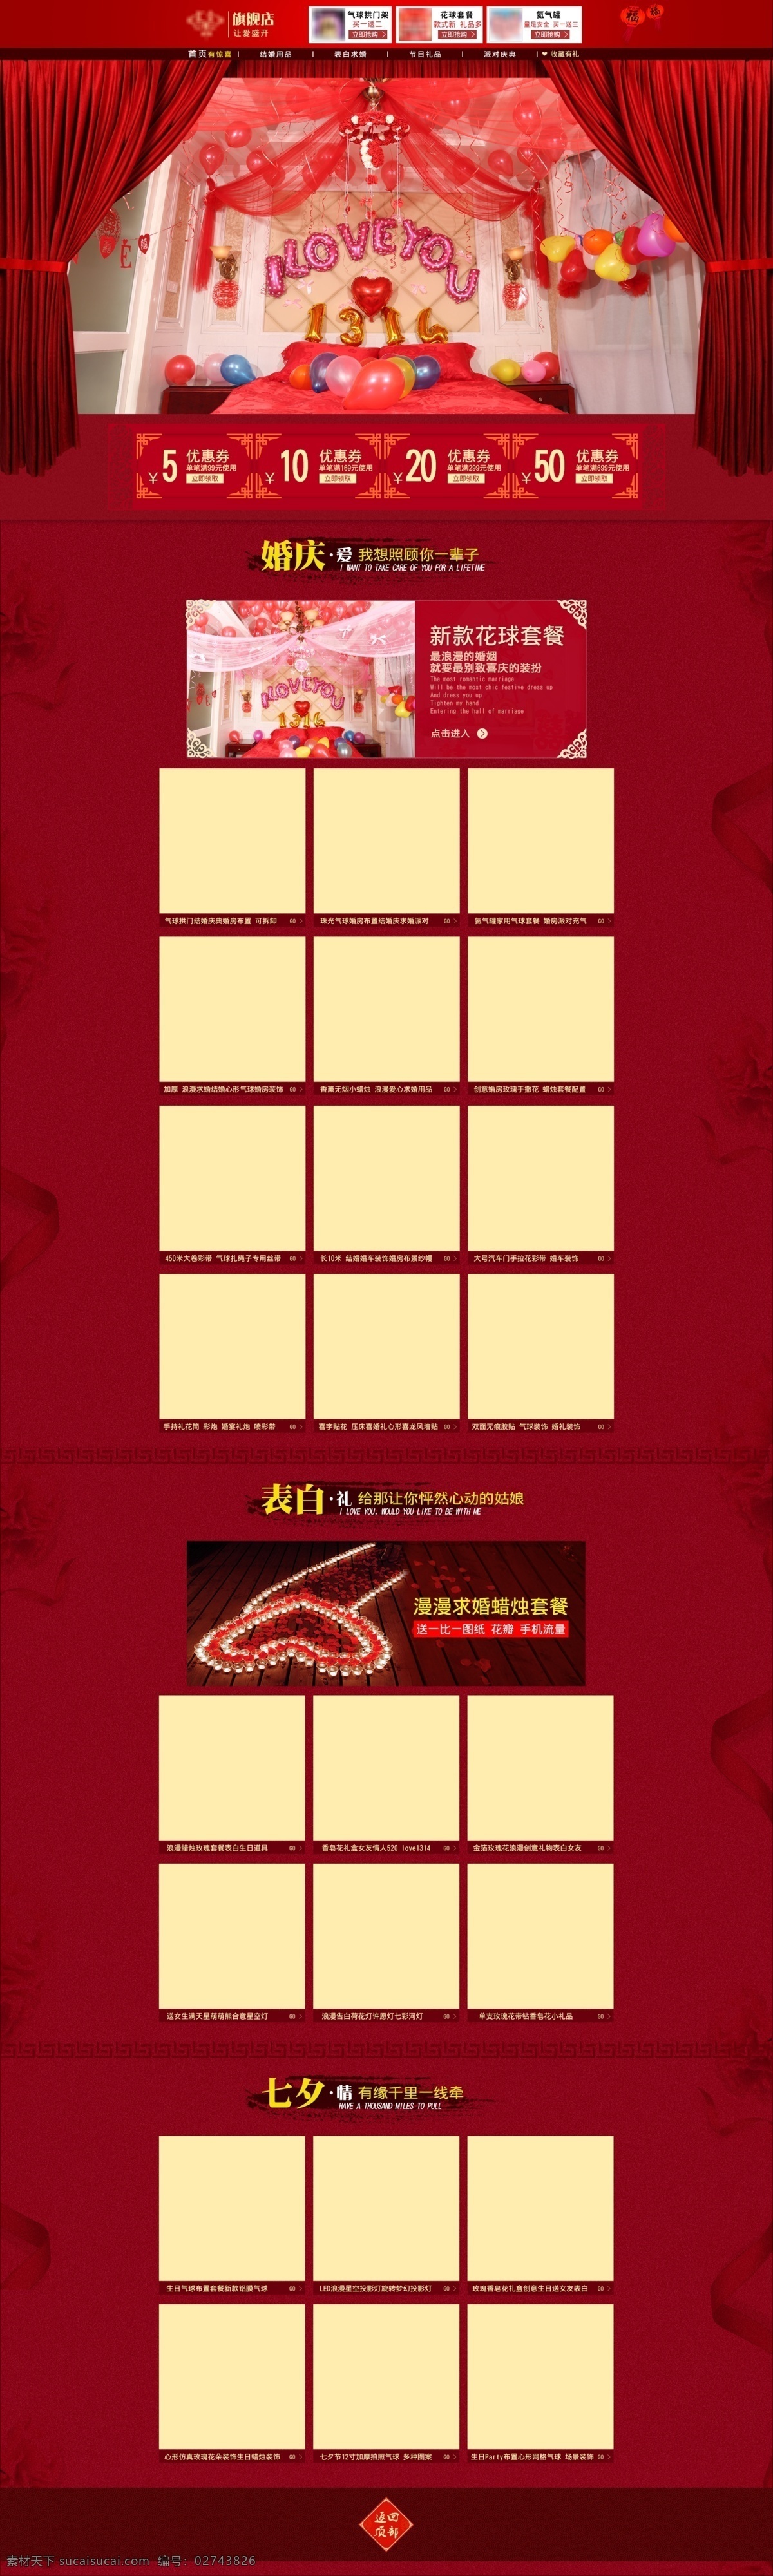 中国 风 婚庆 用品 首页 模版 中国风 古典 红色 首页模版 古风首页